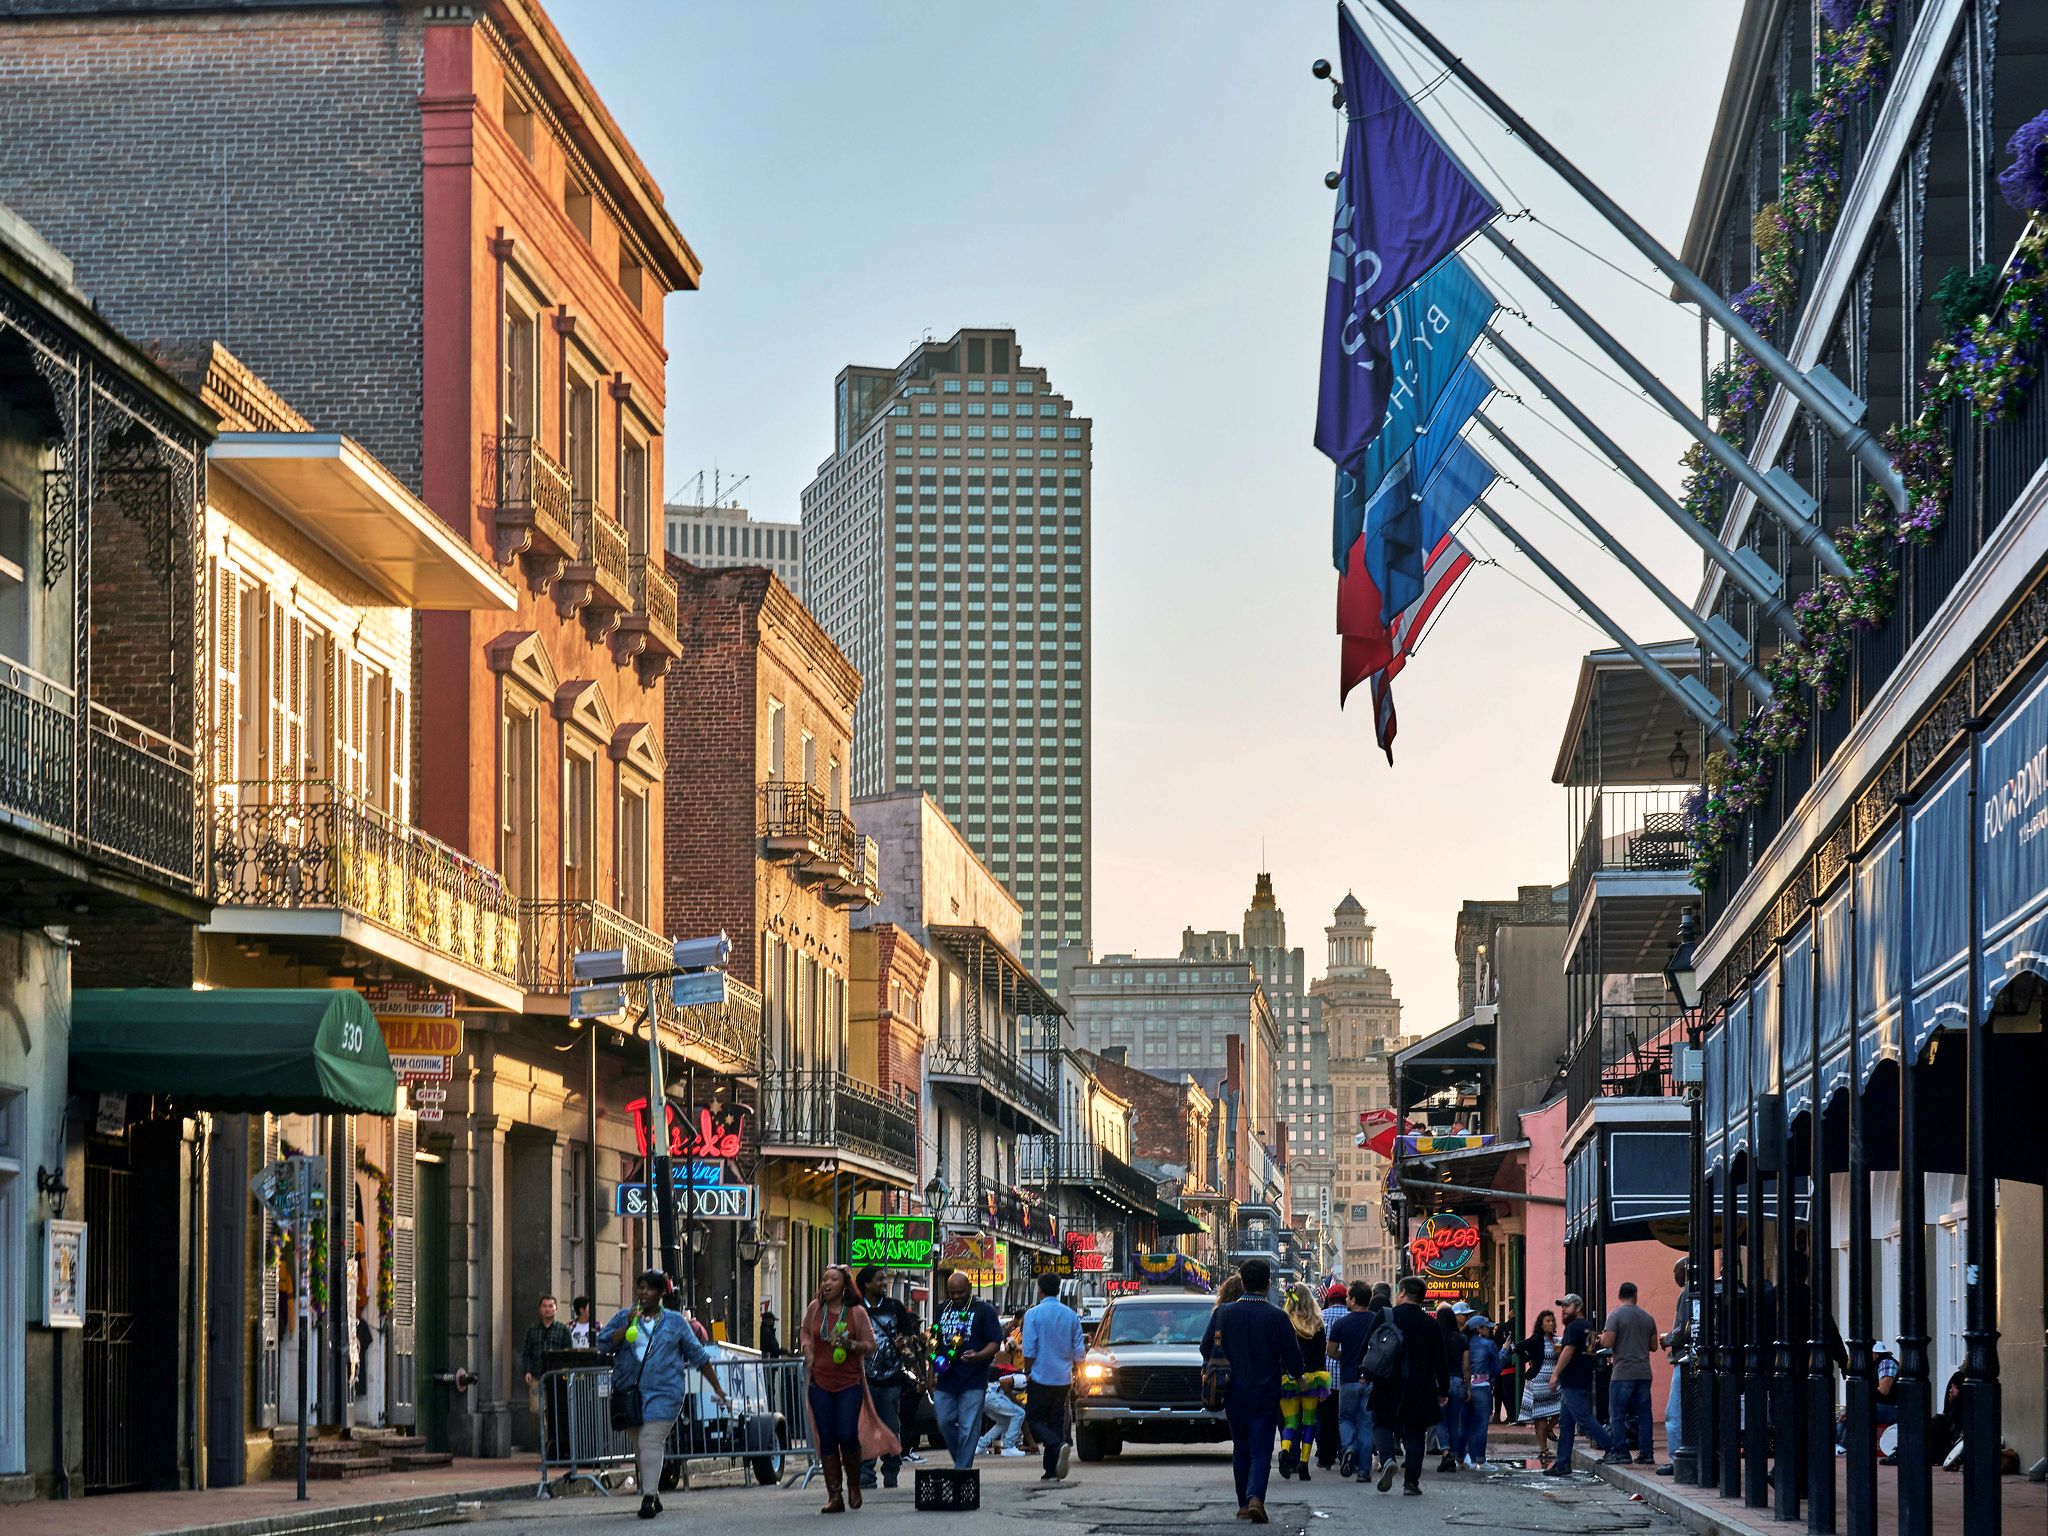 Bourbon Street, French Quarter, New Orleans